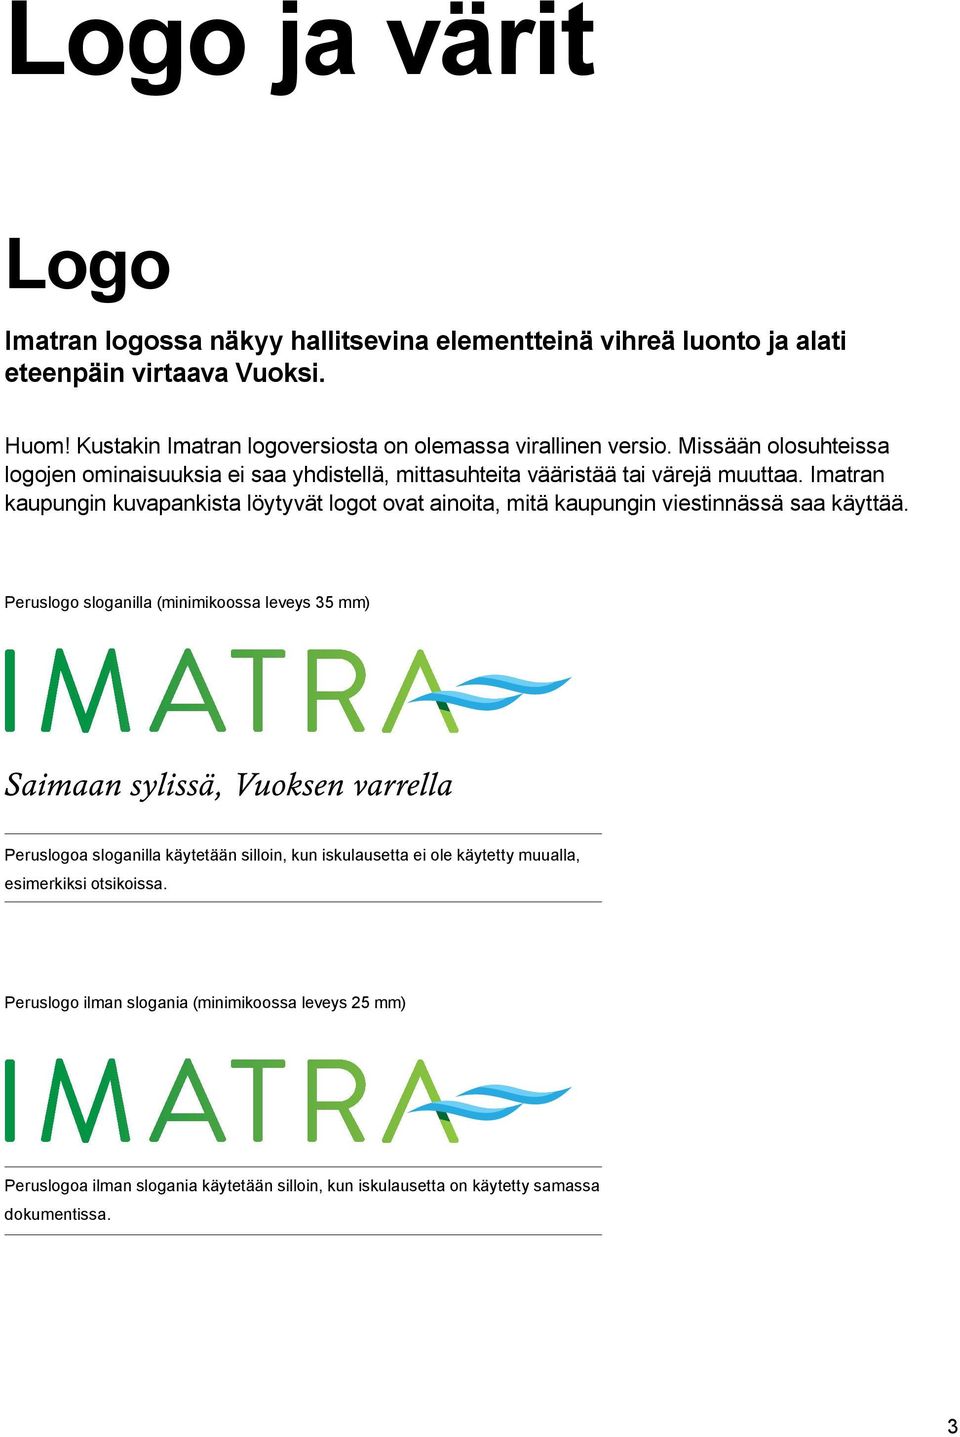 Imatran kaupungin kuvapankista löytyvät logot ovat ainoita, mitä kaupungin viestinnässä saa käyttää.